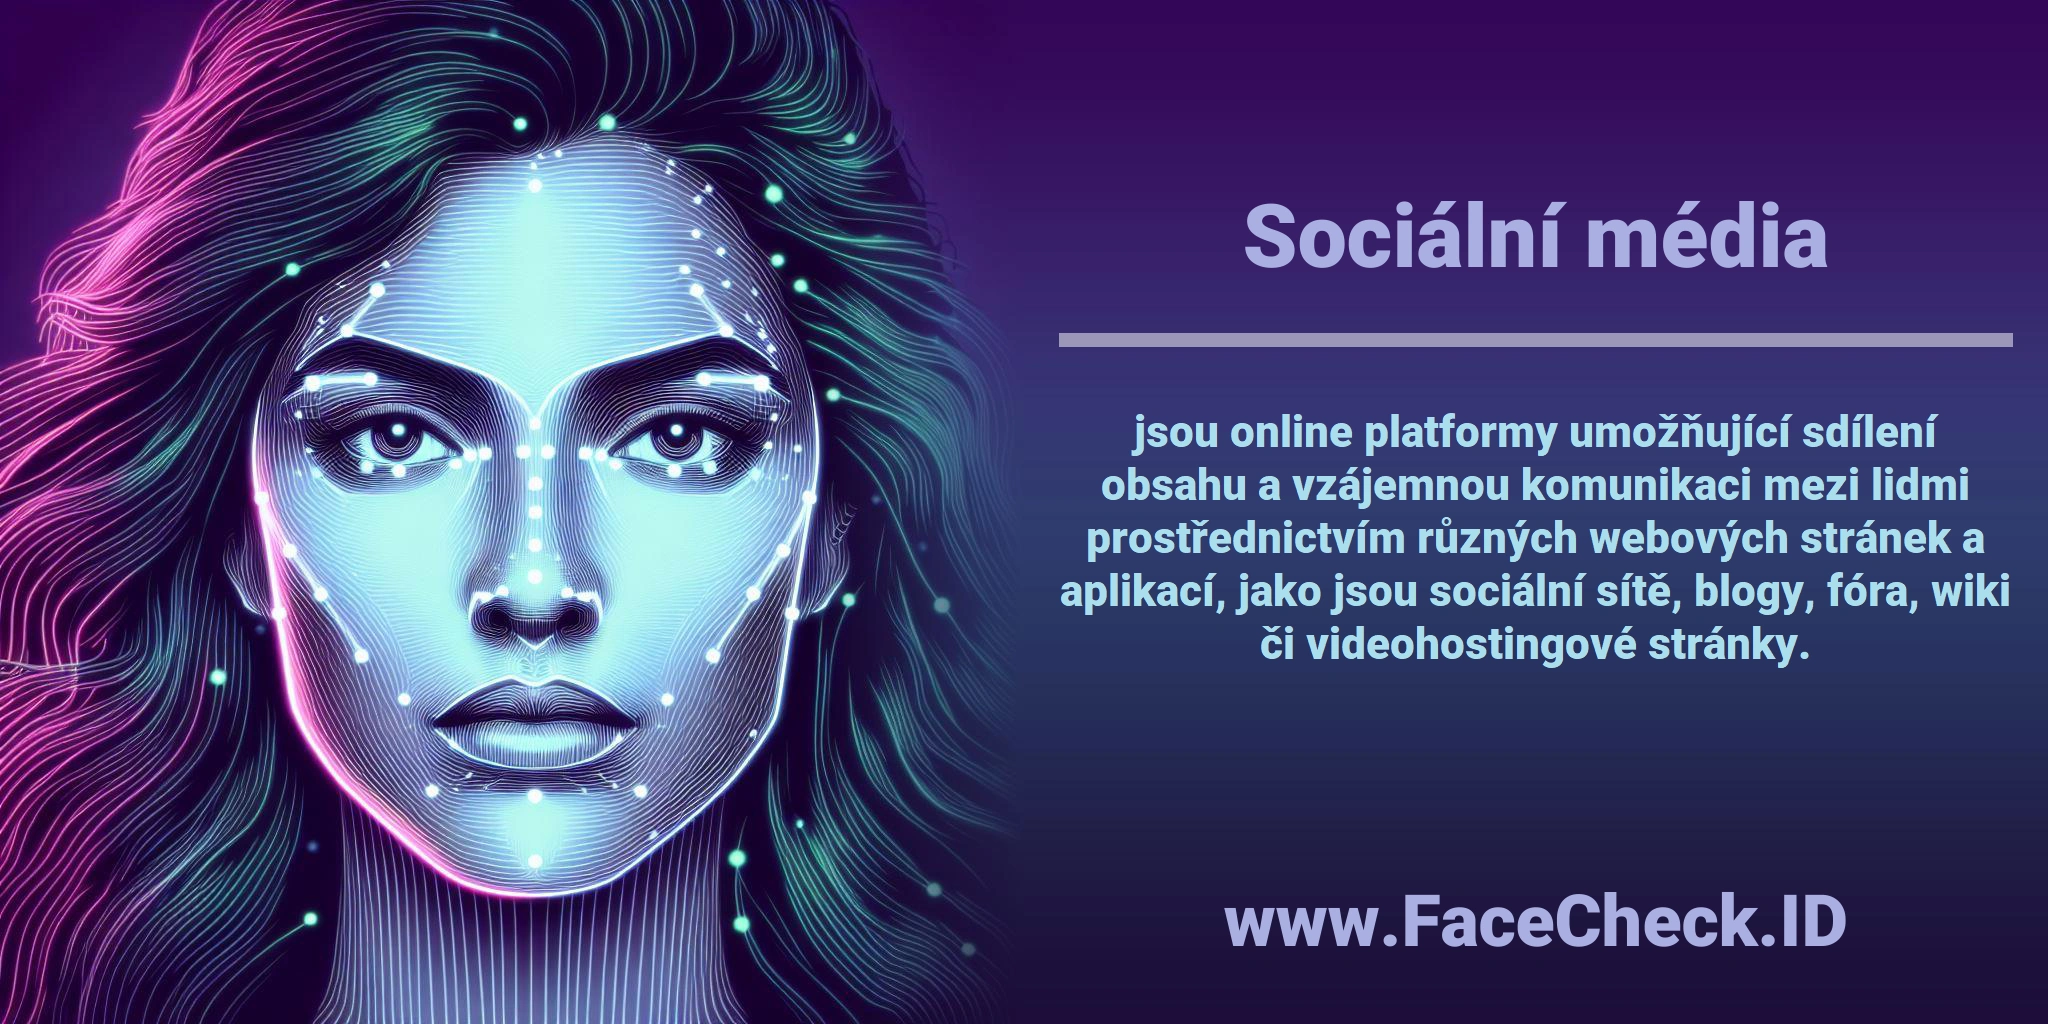 <b>Sociální média</b> jsou online platformy umožňující sdílení obsahu a vzájemnou komunikaci mezi lidmi prostřednictvím různých webových stránek a aplikací, jako jsou sociální sítě, blogy, fóra, wiki či videohostingové stránky.